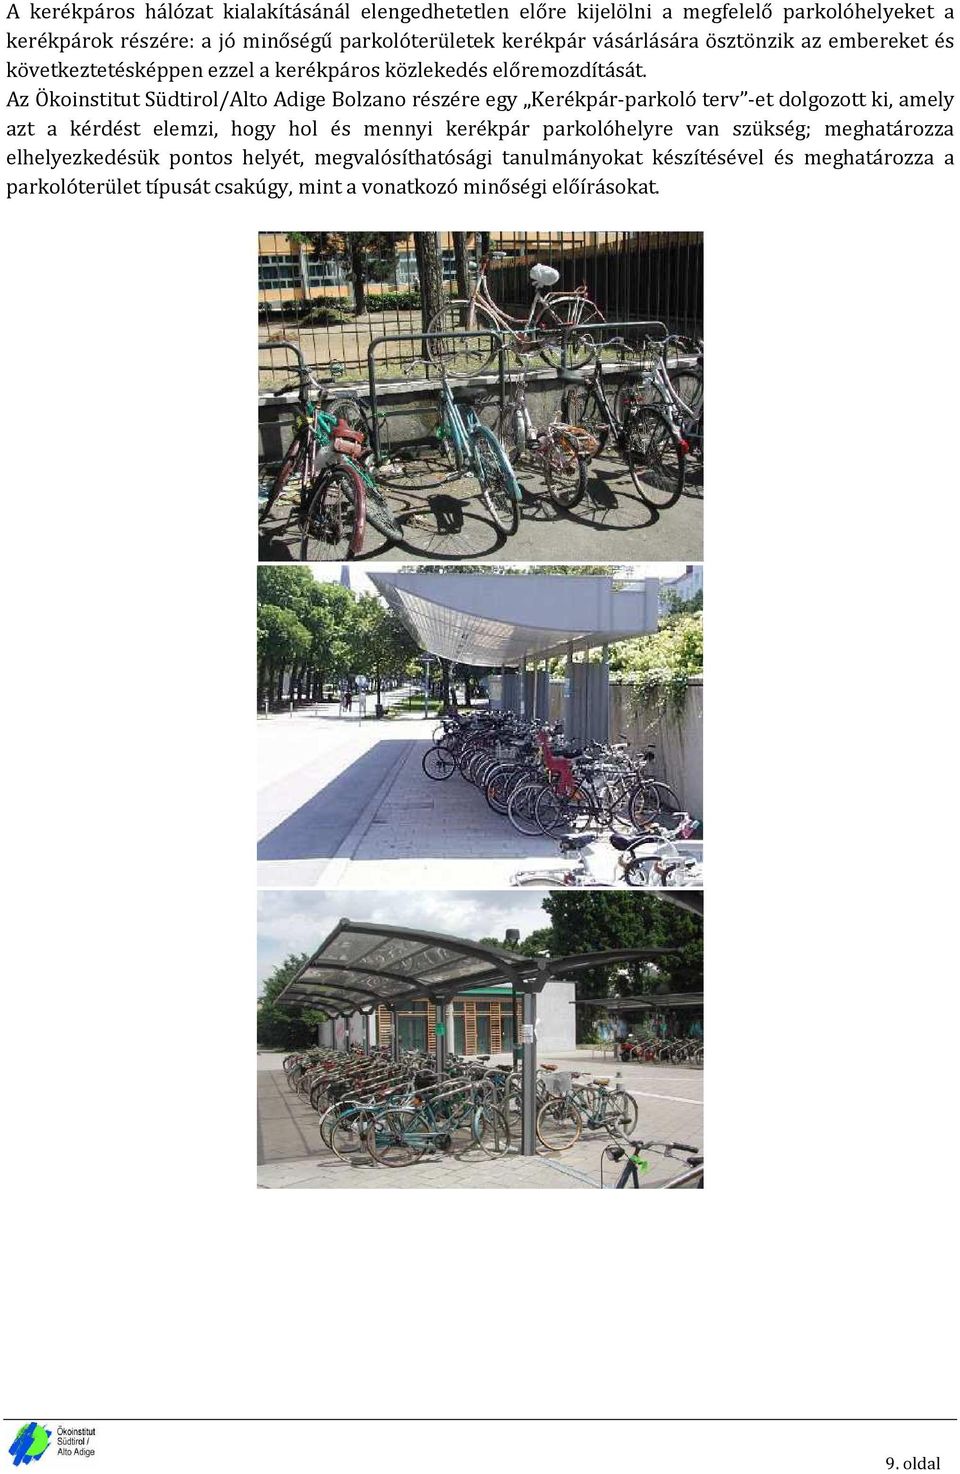 Az Ökoinstitut Südtirol/Alto Adige Bolzano részére egy Kerékpár-parkoló terv -et dolgozott ki, amely azt a kérdést elemzi, hogy hol és mennyi kerékpár